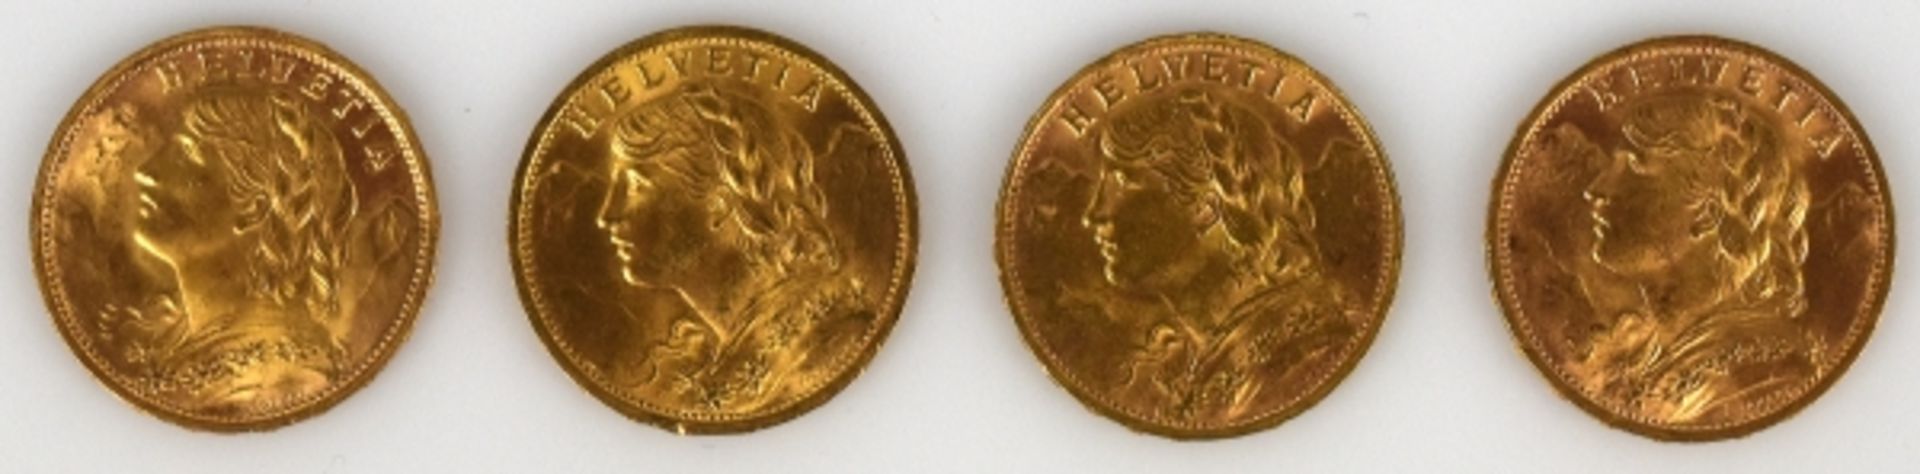 4 GOLDMÜNZEN 20Fr. (Vreneli) Schweiz, 1898, 1927, 1947, 1980, gesamt 25,8g - Bild 2 aus 2